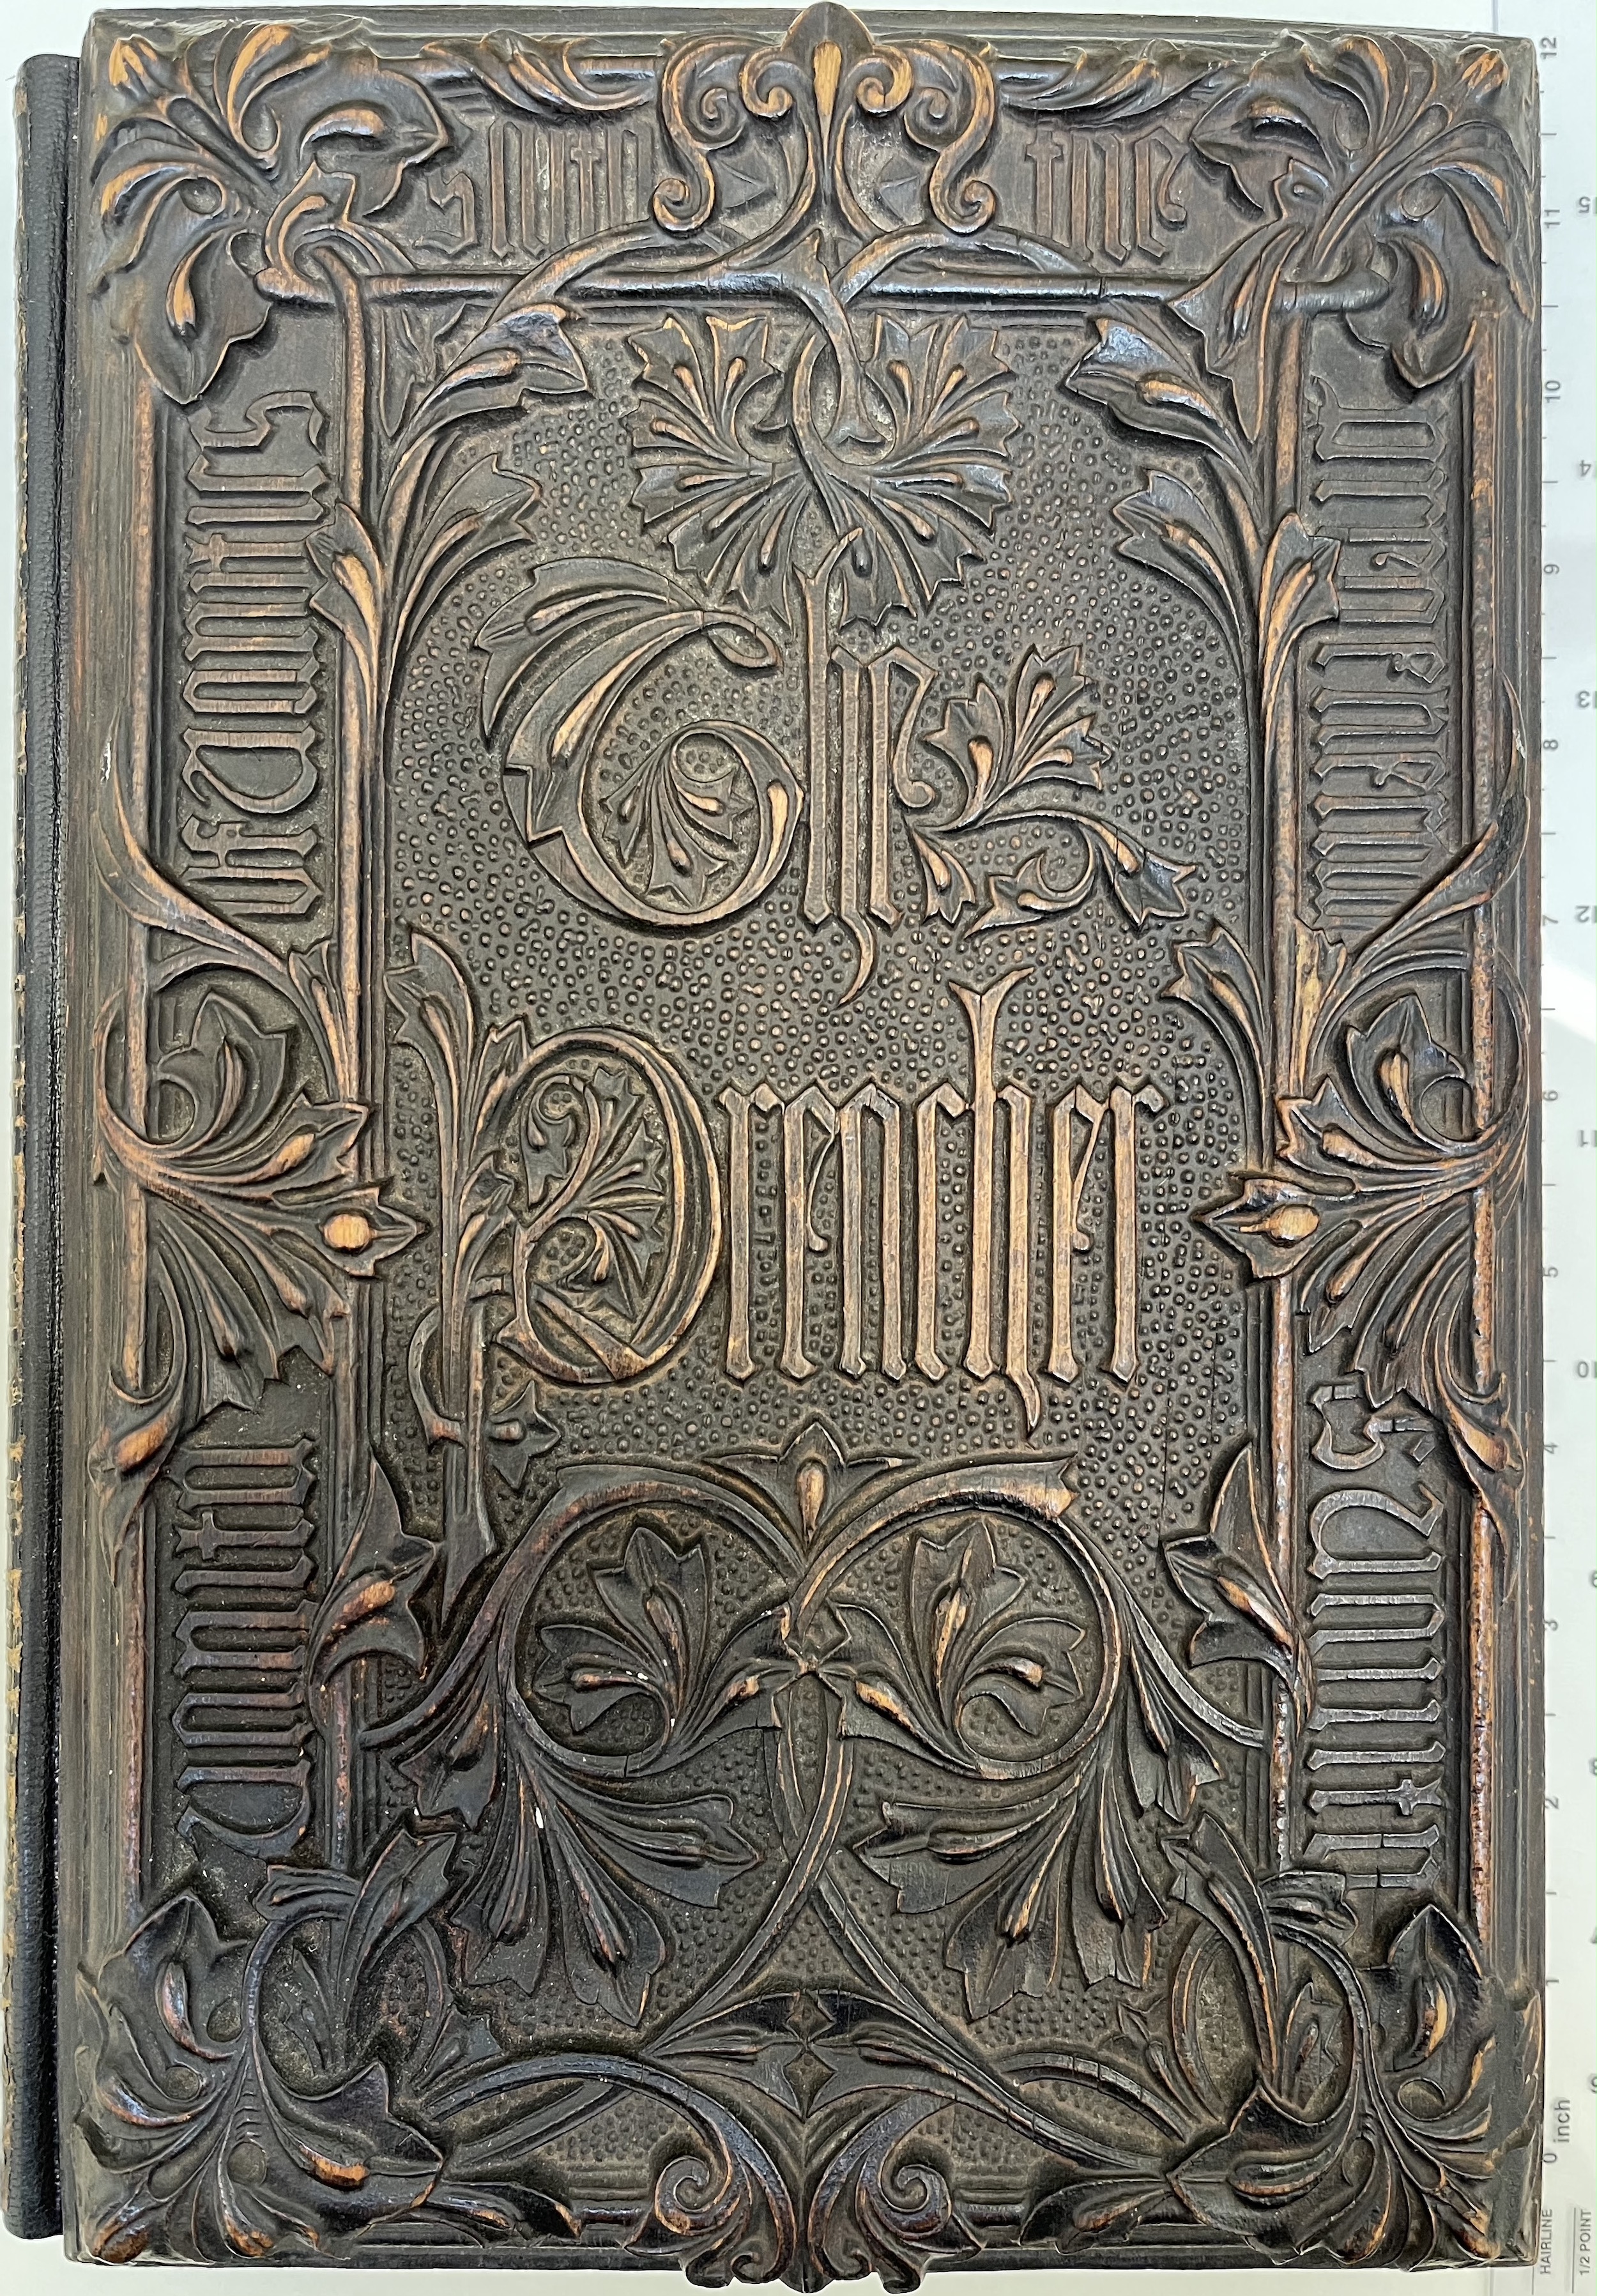 Upper cover of relievo binding on Jones's The Preacher